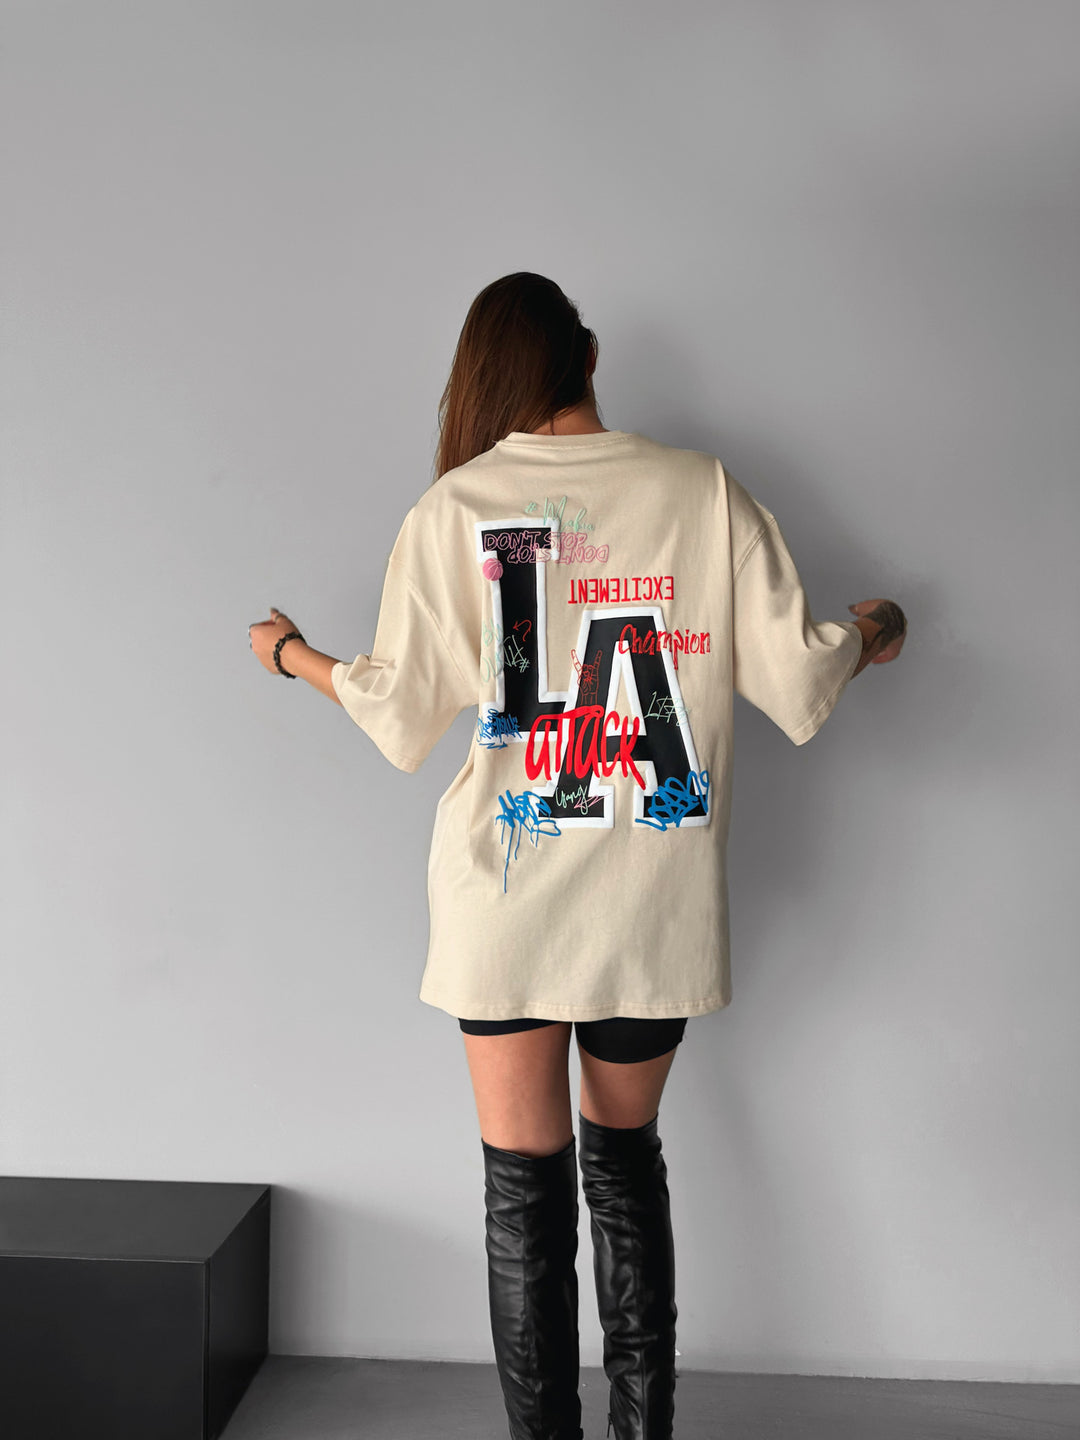 Oversize L.A T-shirt - Beige